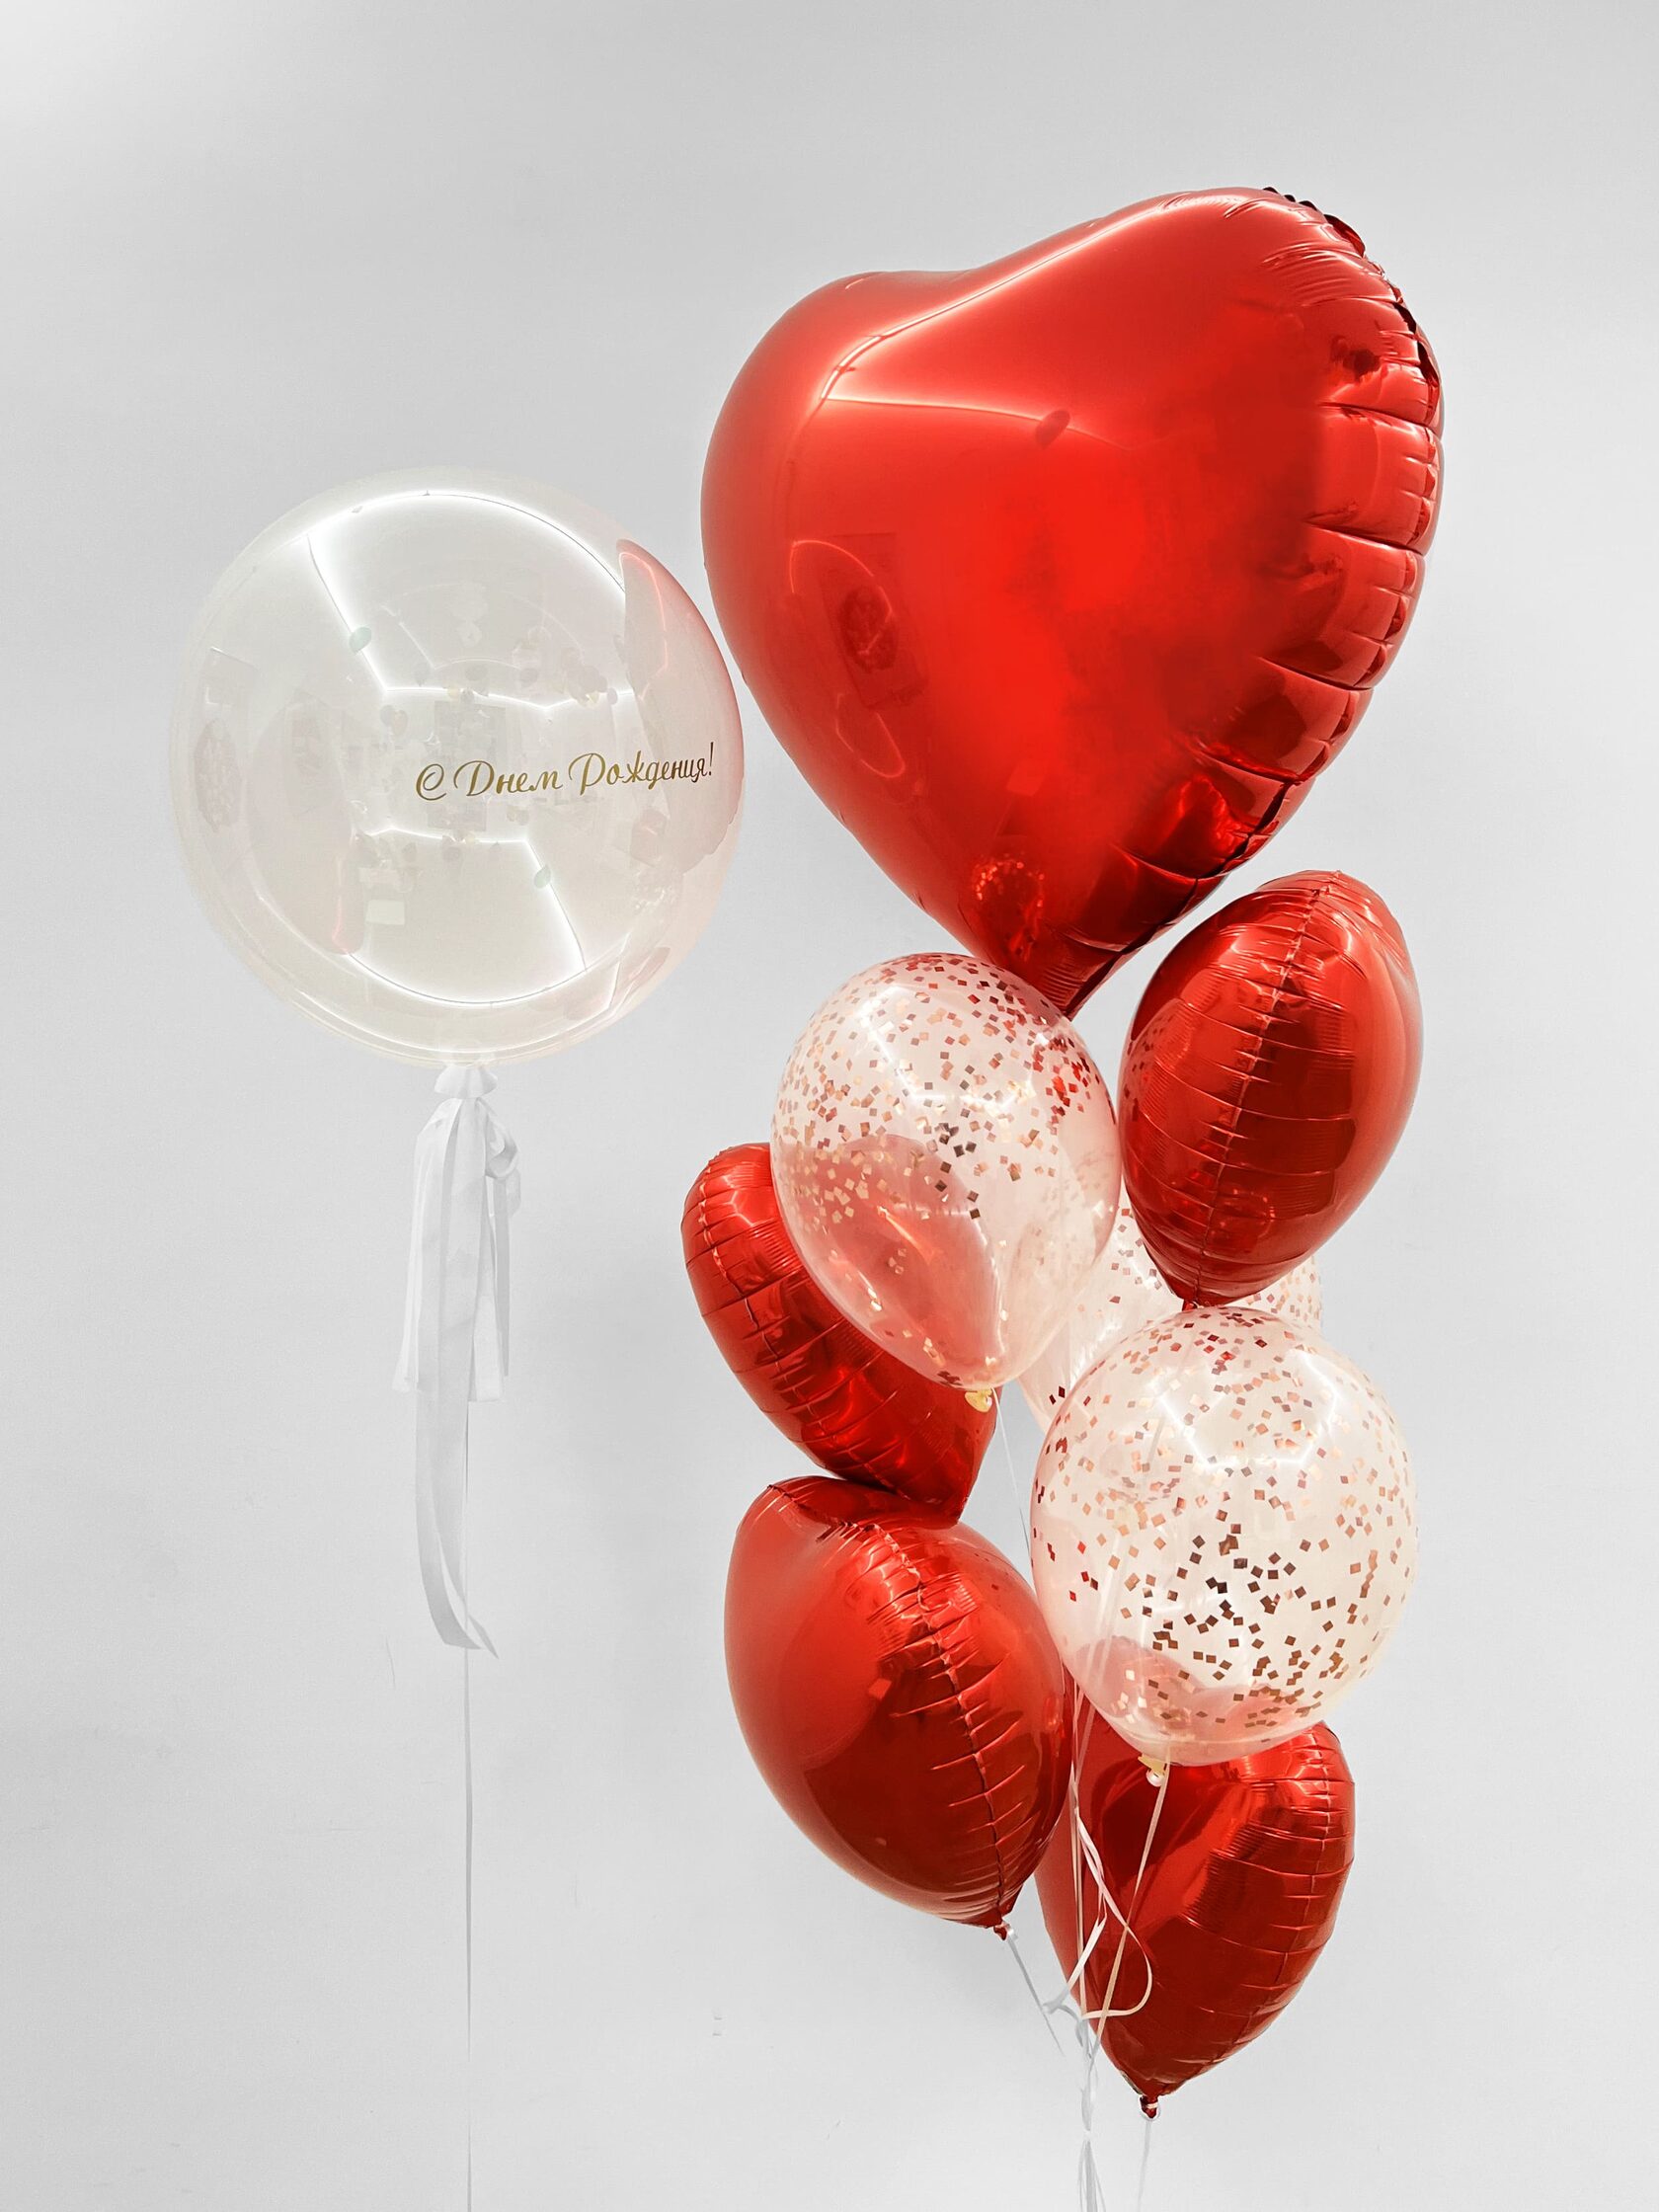 Фонтан из шаров «Алое сердце» - 10 шаров + шар Bubbles (сфера) - красные сердца конфетти